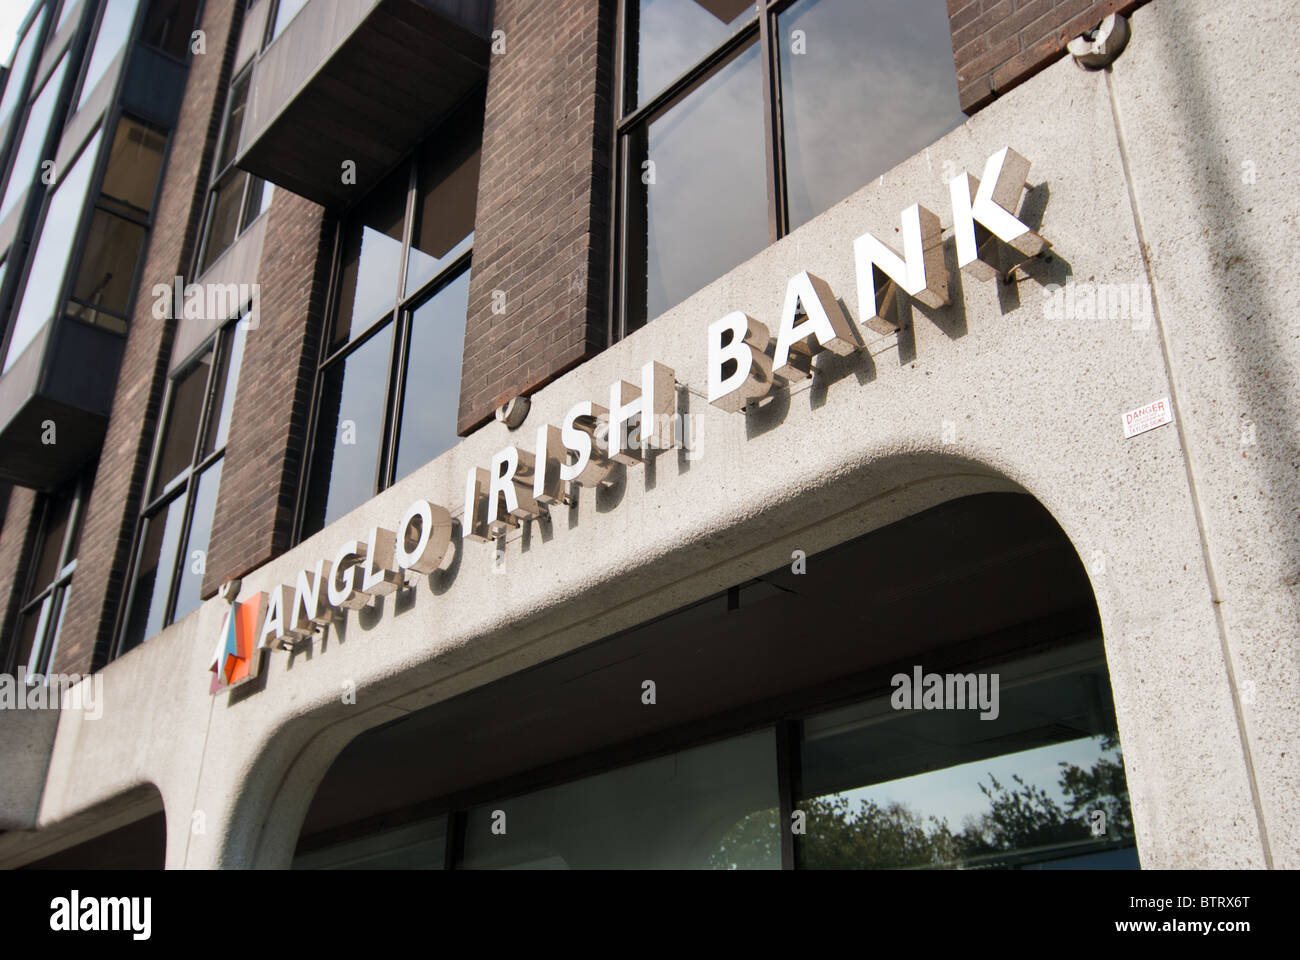 Anglo Irish Bank nel cuore dell'Irlandese crisi finanziaria. Dublino, Irlanda. Foto Stock